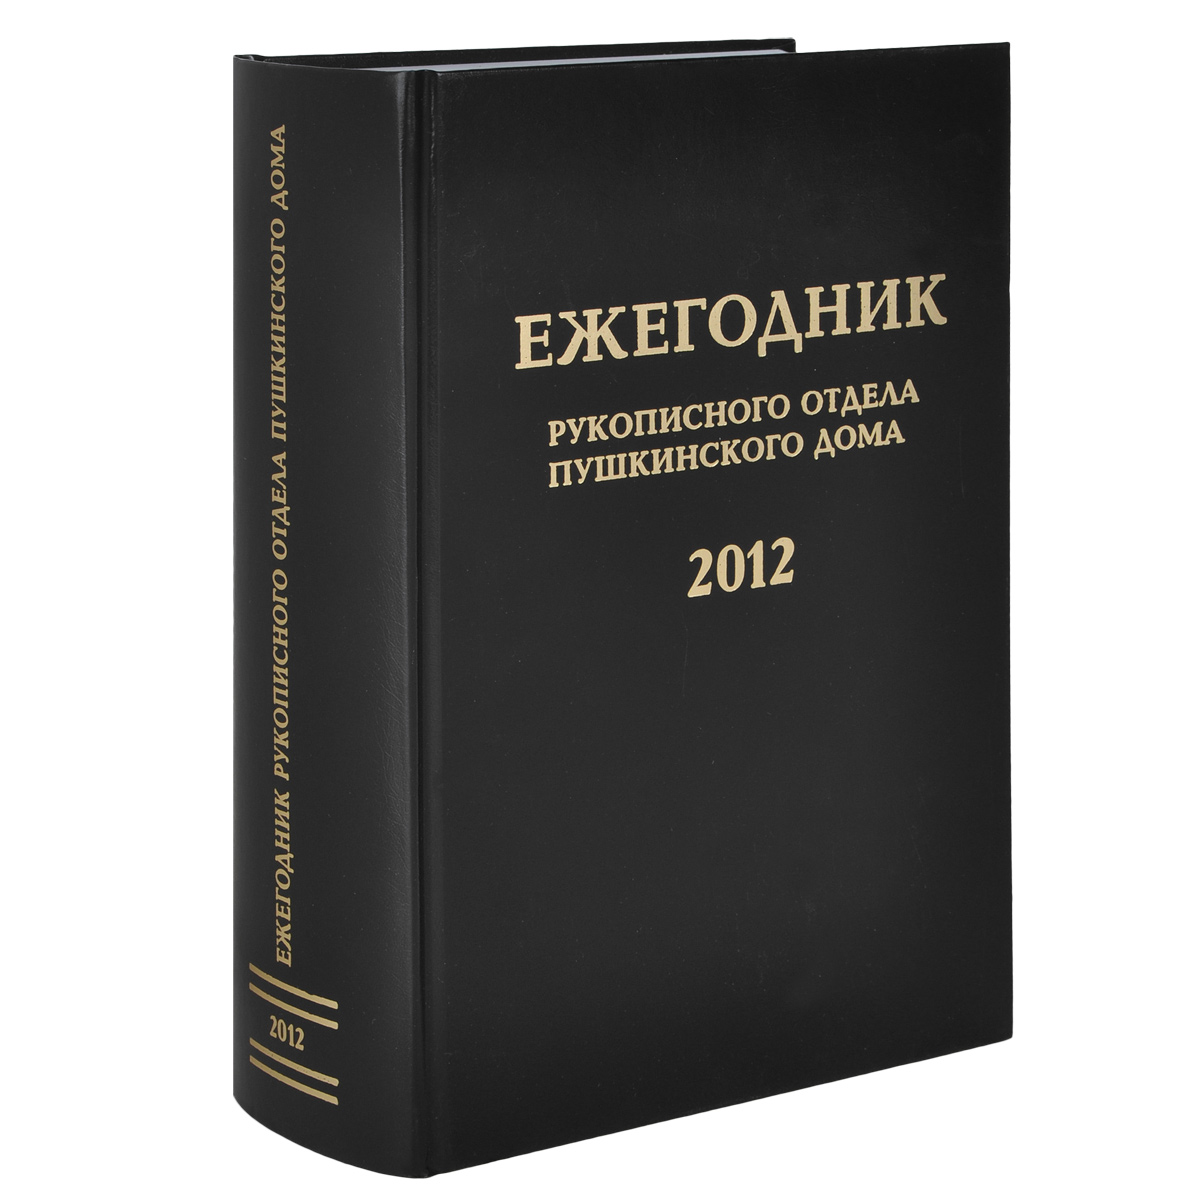 Ежегодник Рукописного отдела Пушкинского Дома на 2012 год